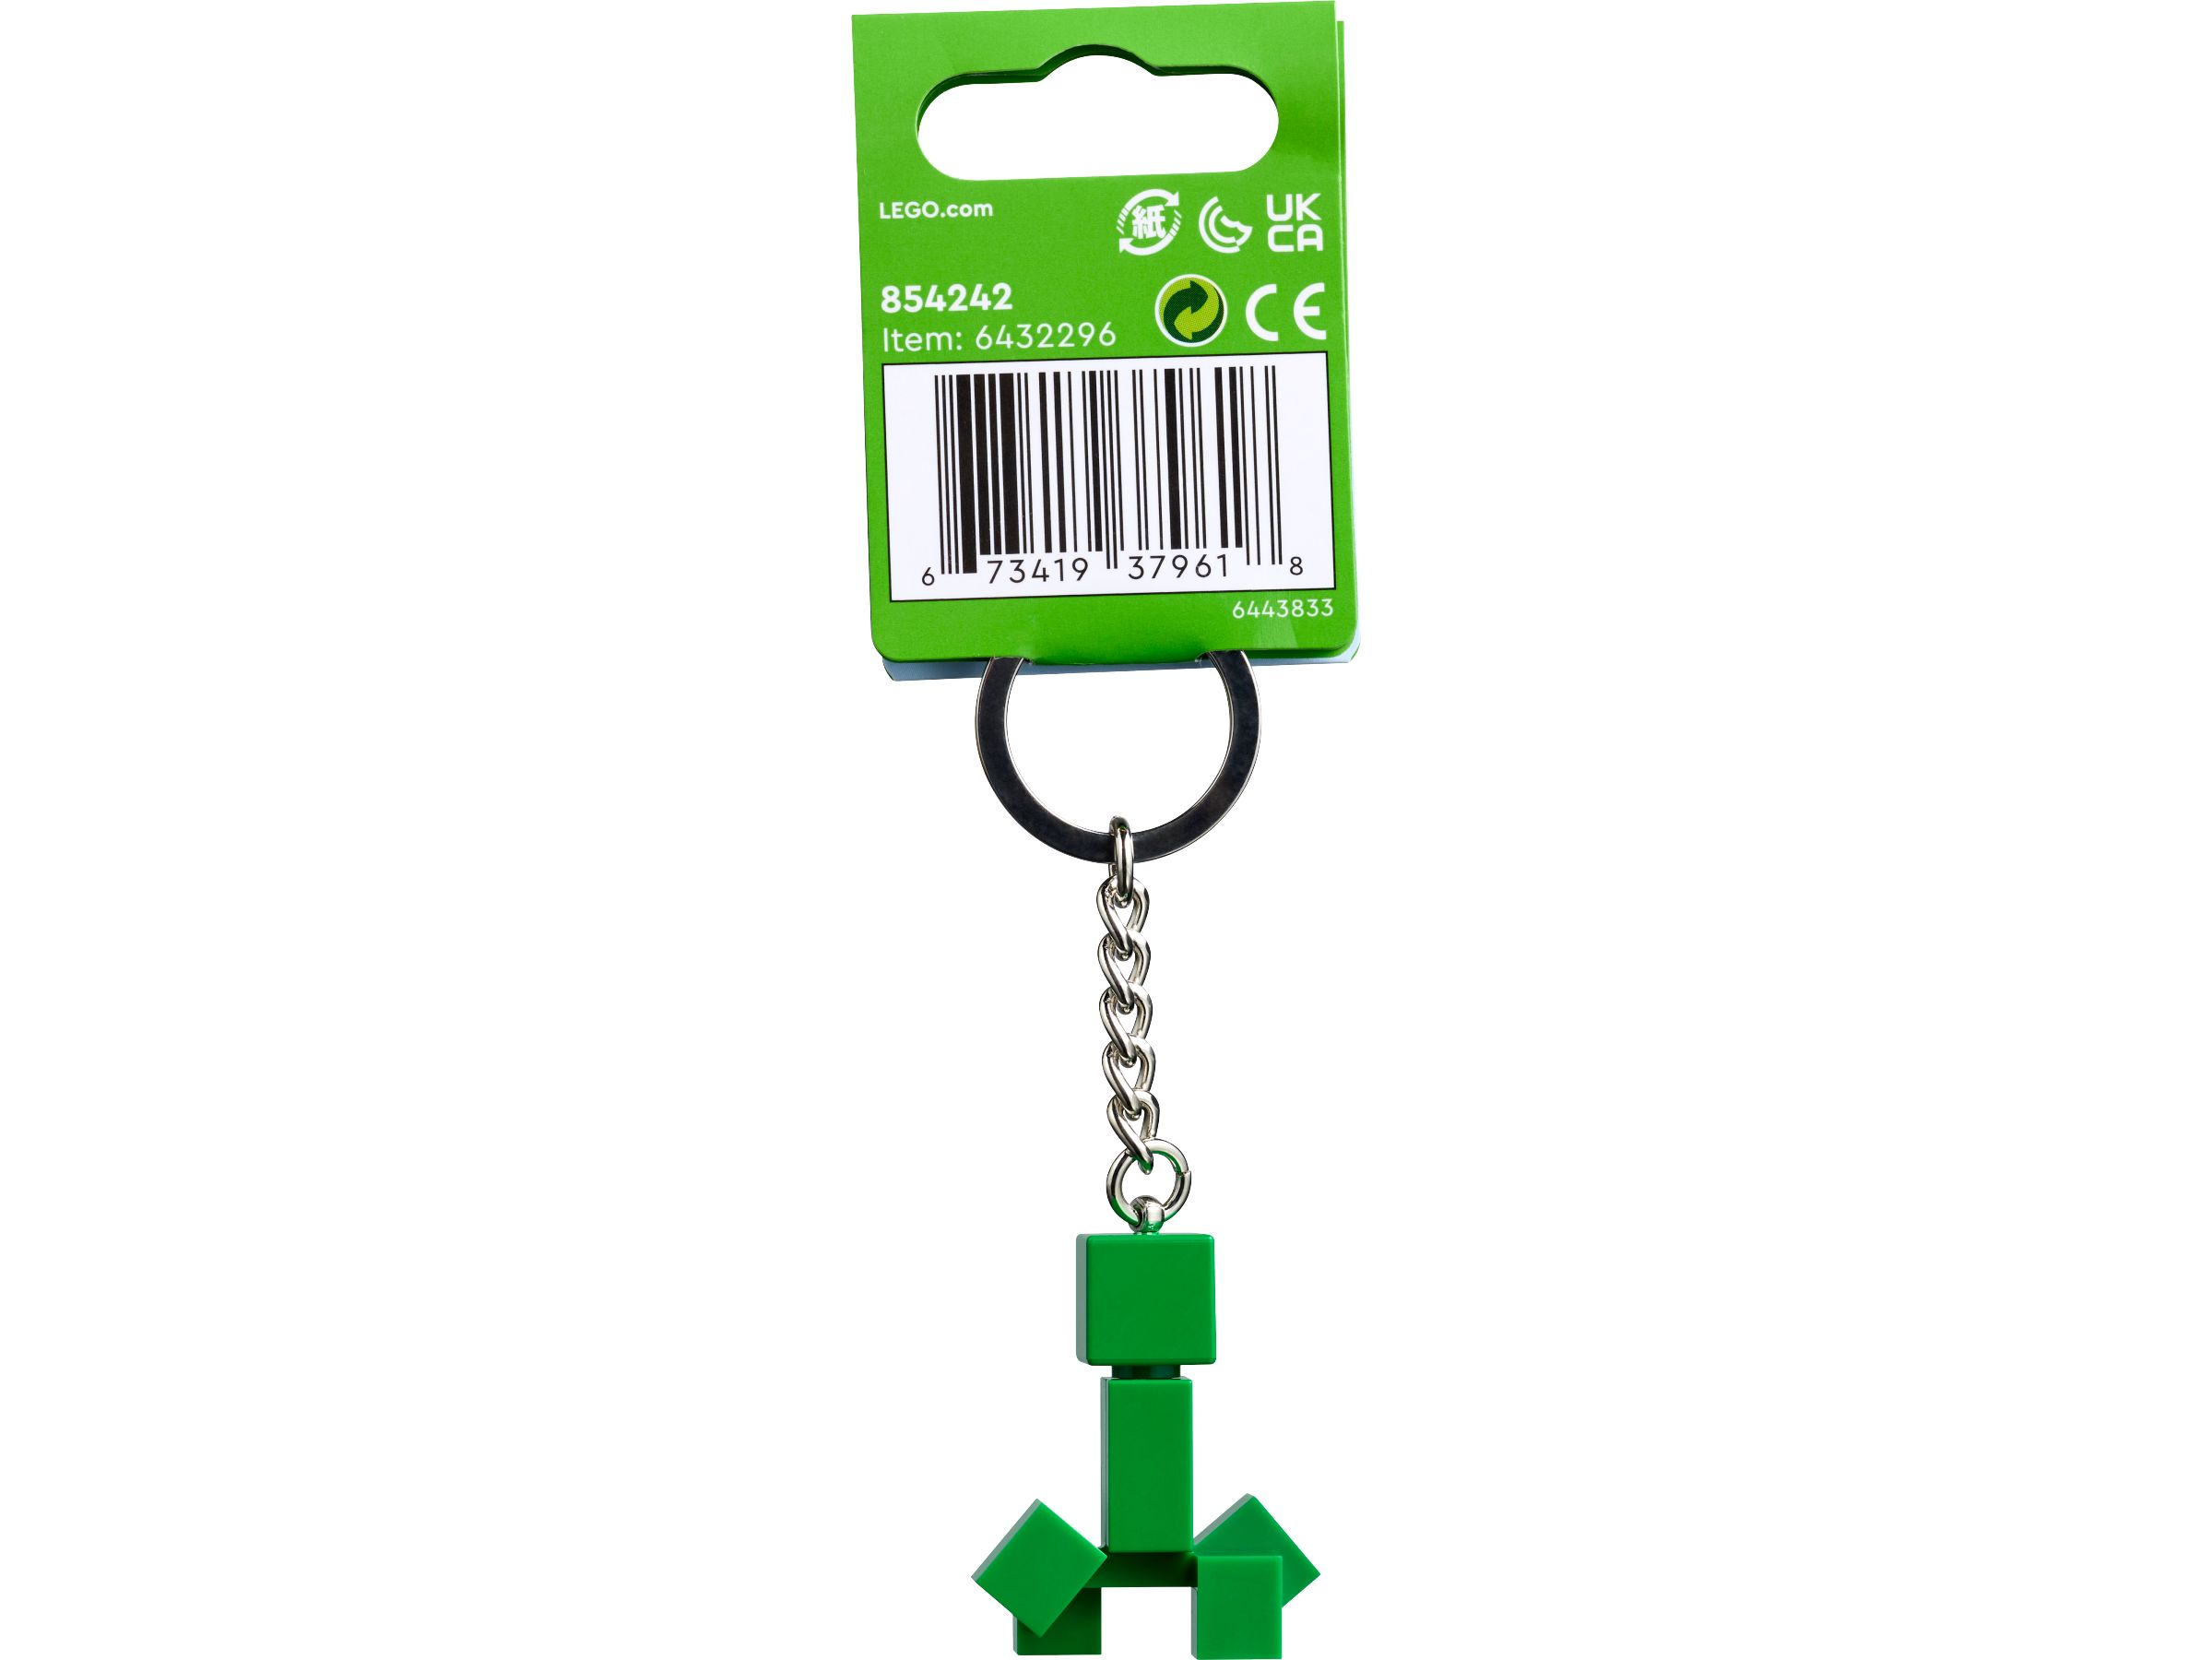 LEGO Gear 854242 Creeper™ Schlüsselanhänger LEGO_854242_alt2.jpg